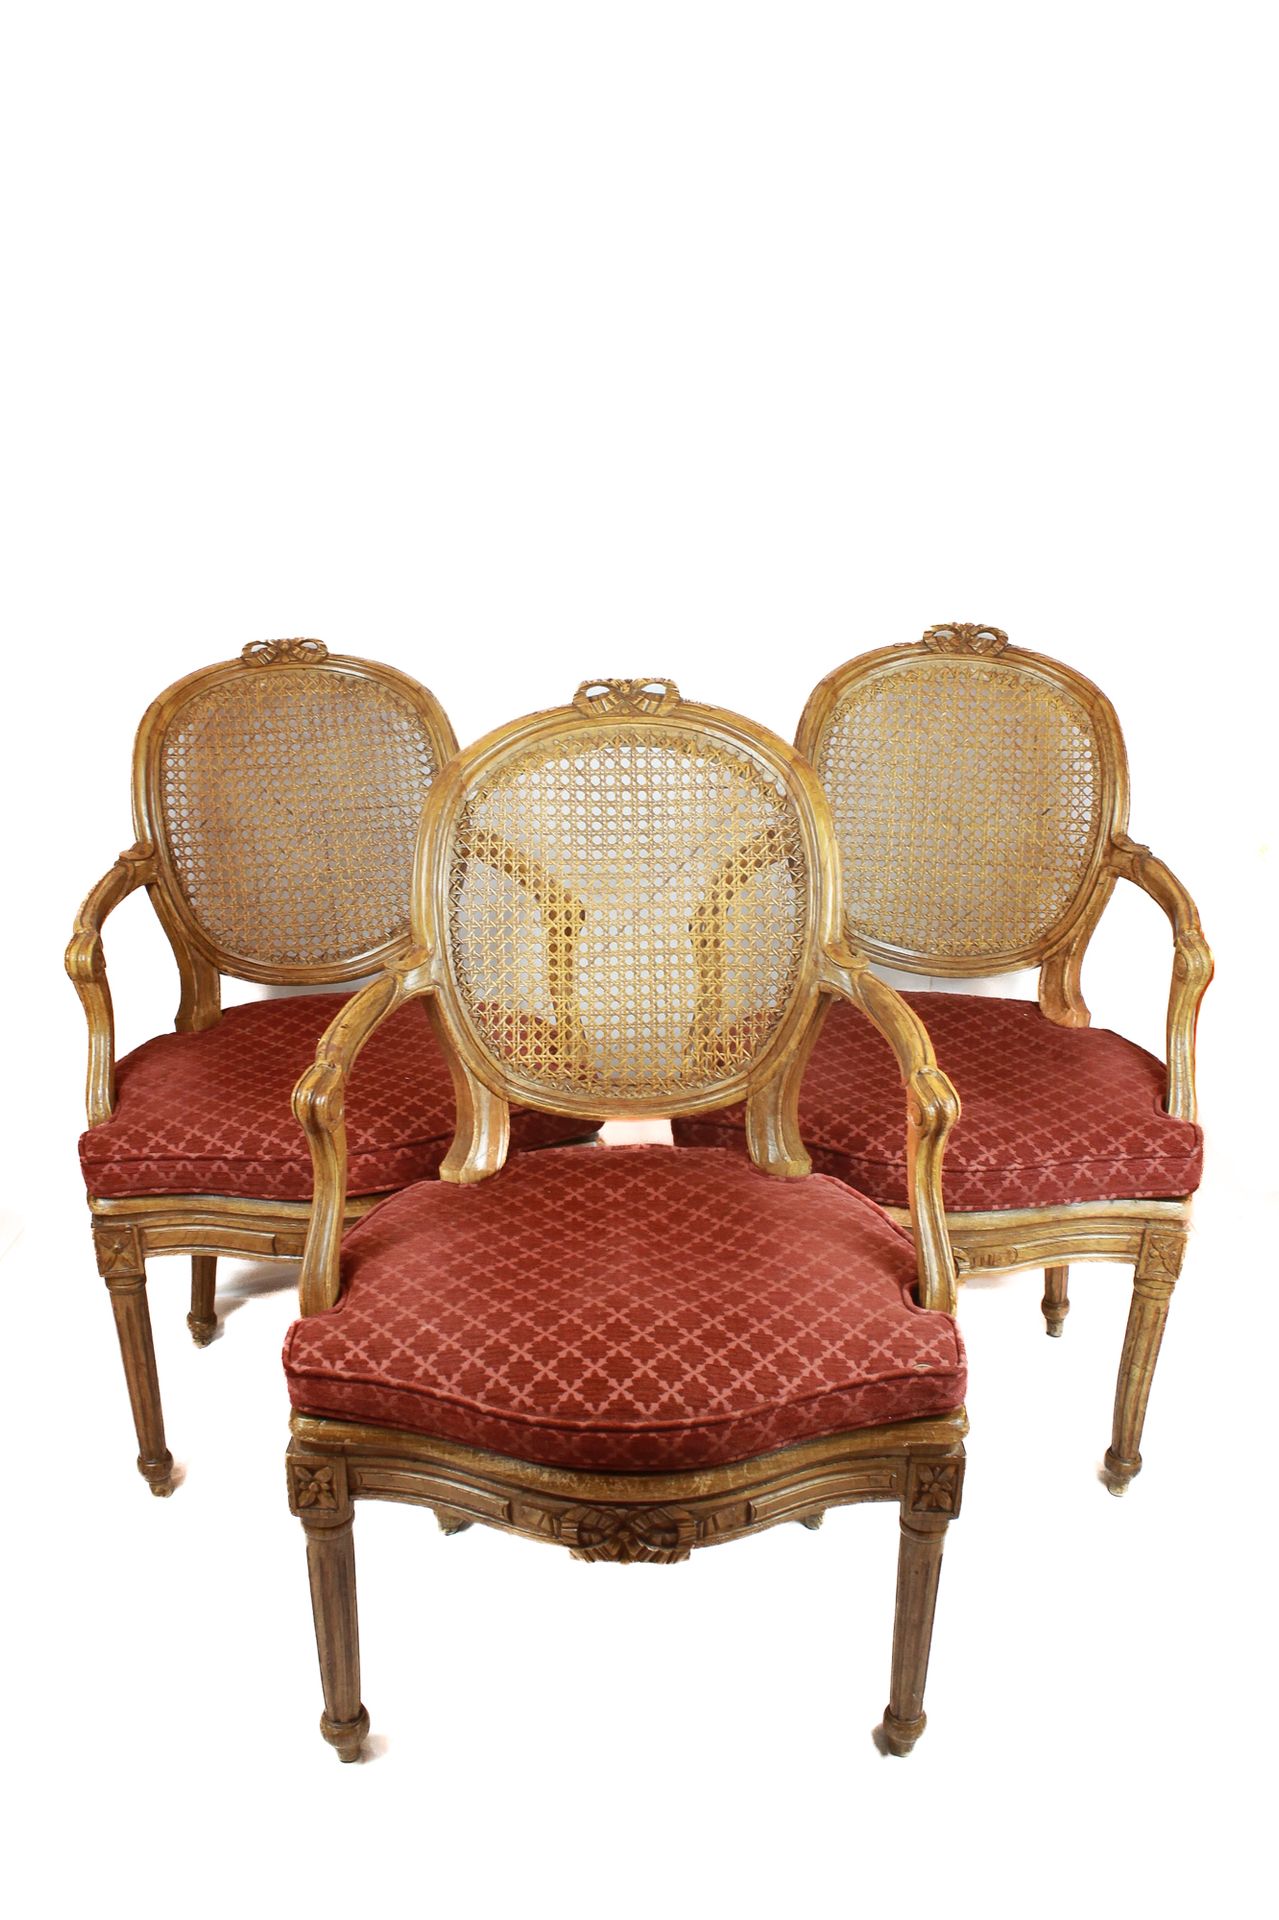 Set of 8 armchairs 95 x 60 x 48 cm
In legno di faggio, con schienale a medaglion&hellip;